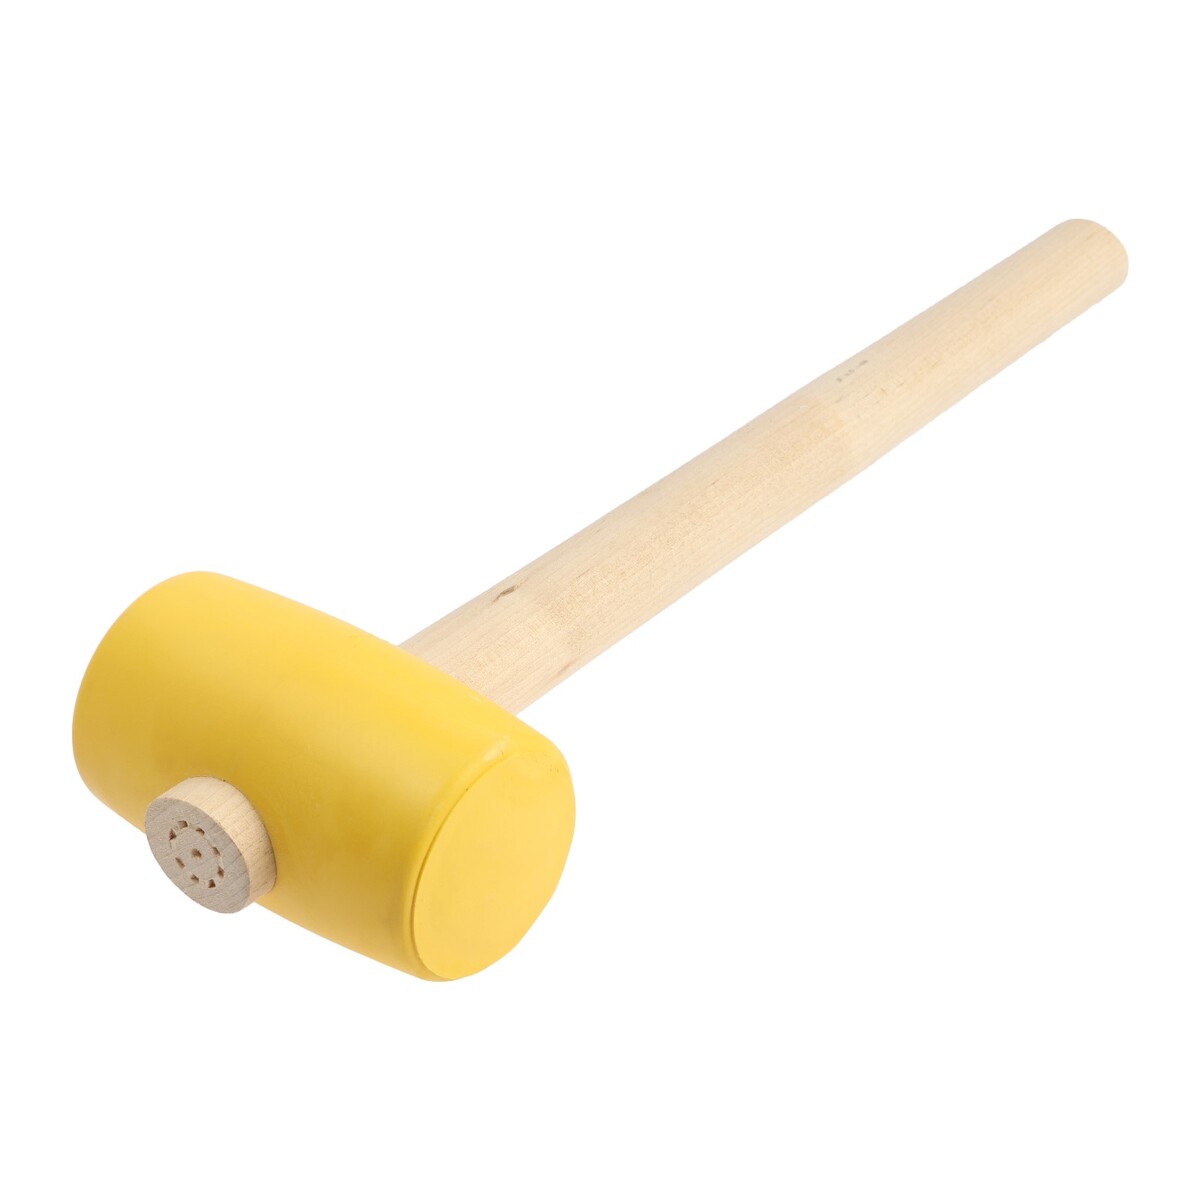 Киянка лом, деревянная рукоятка, желтая резина, 55 мм, 400 г киянка тундра фиберглассовая рукоятка белая резина 750 г